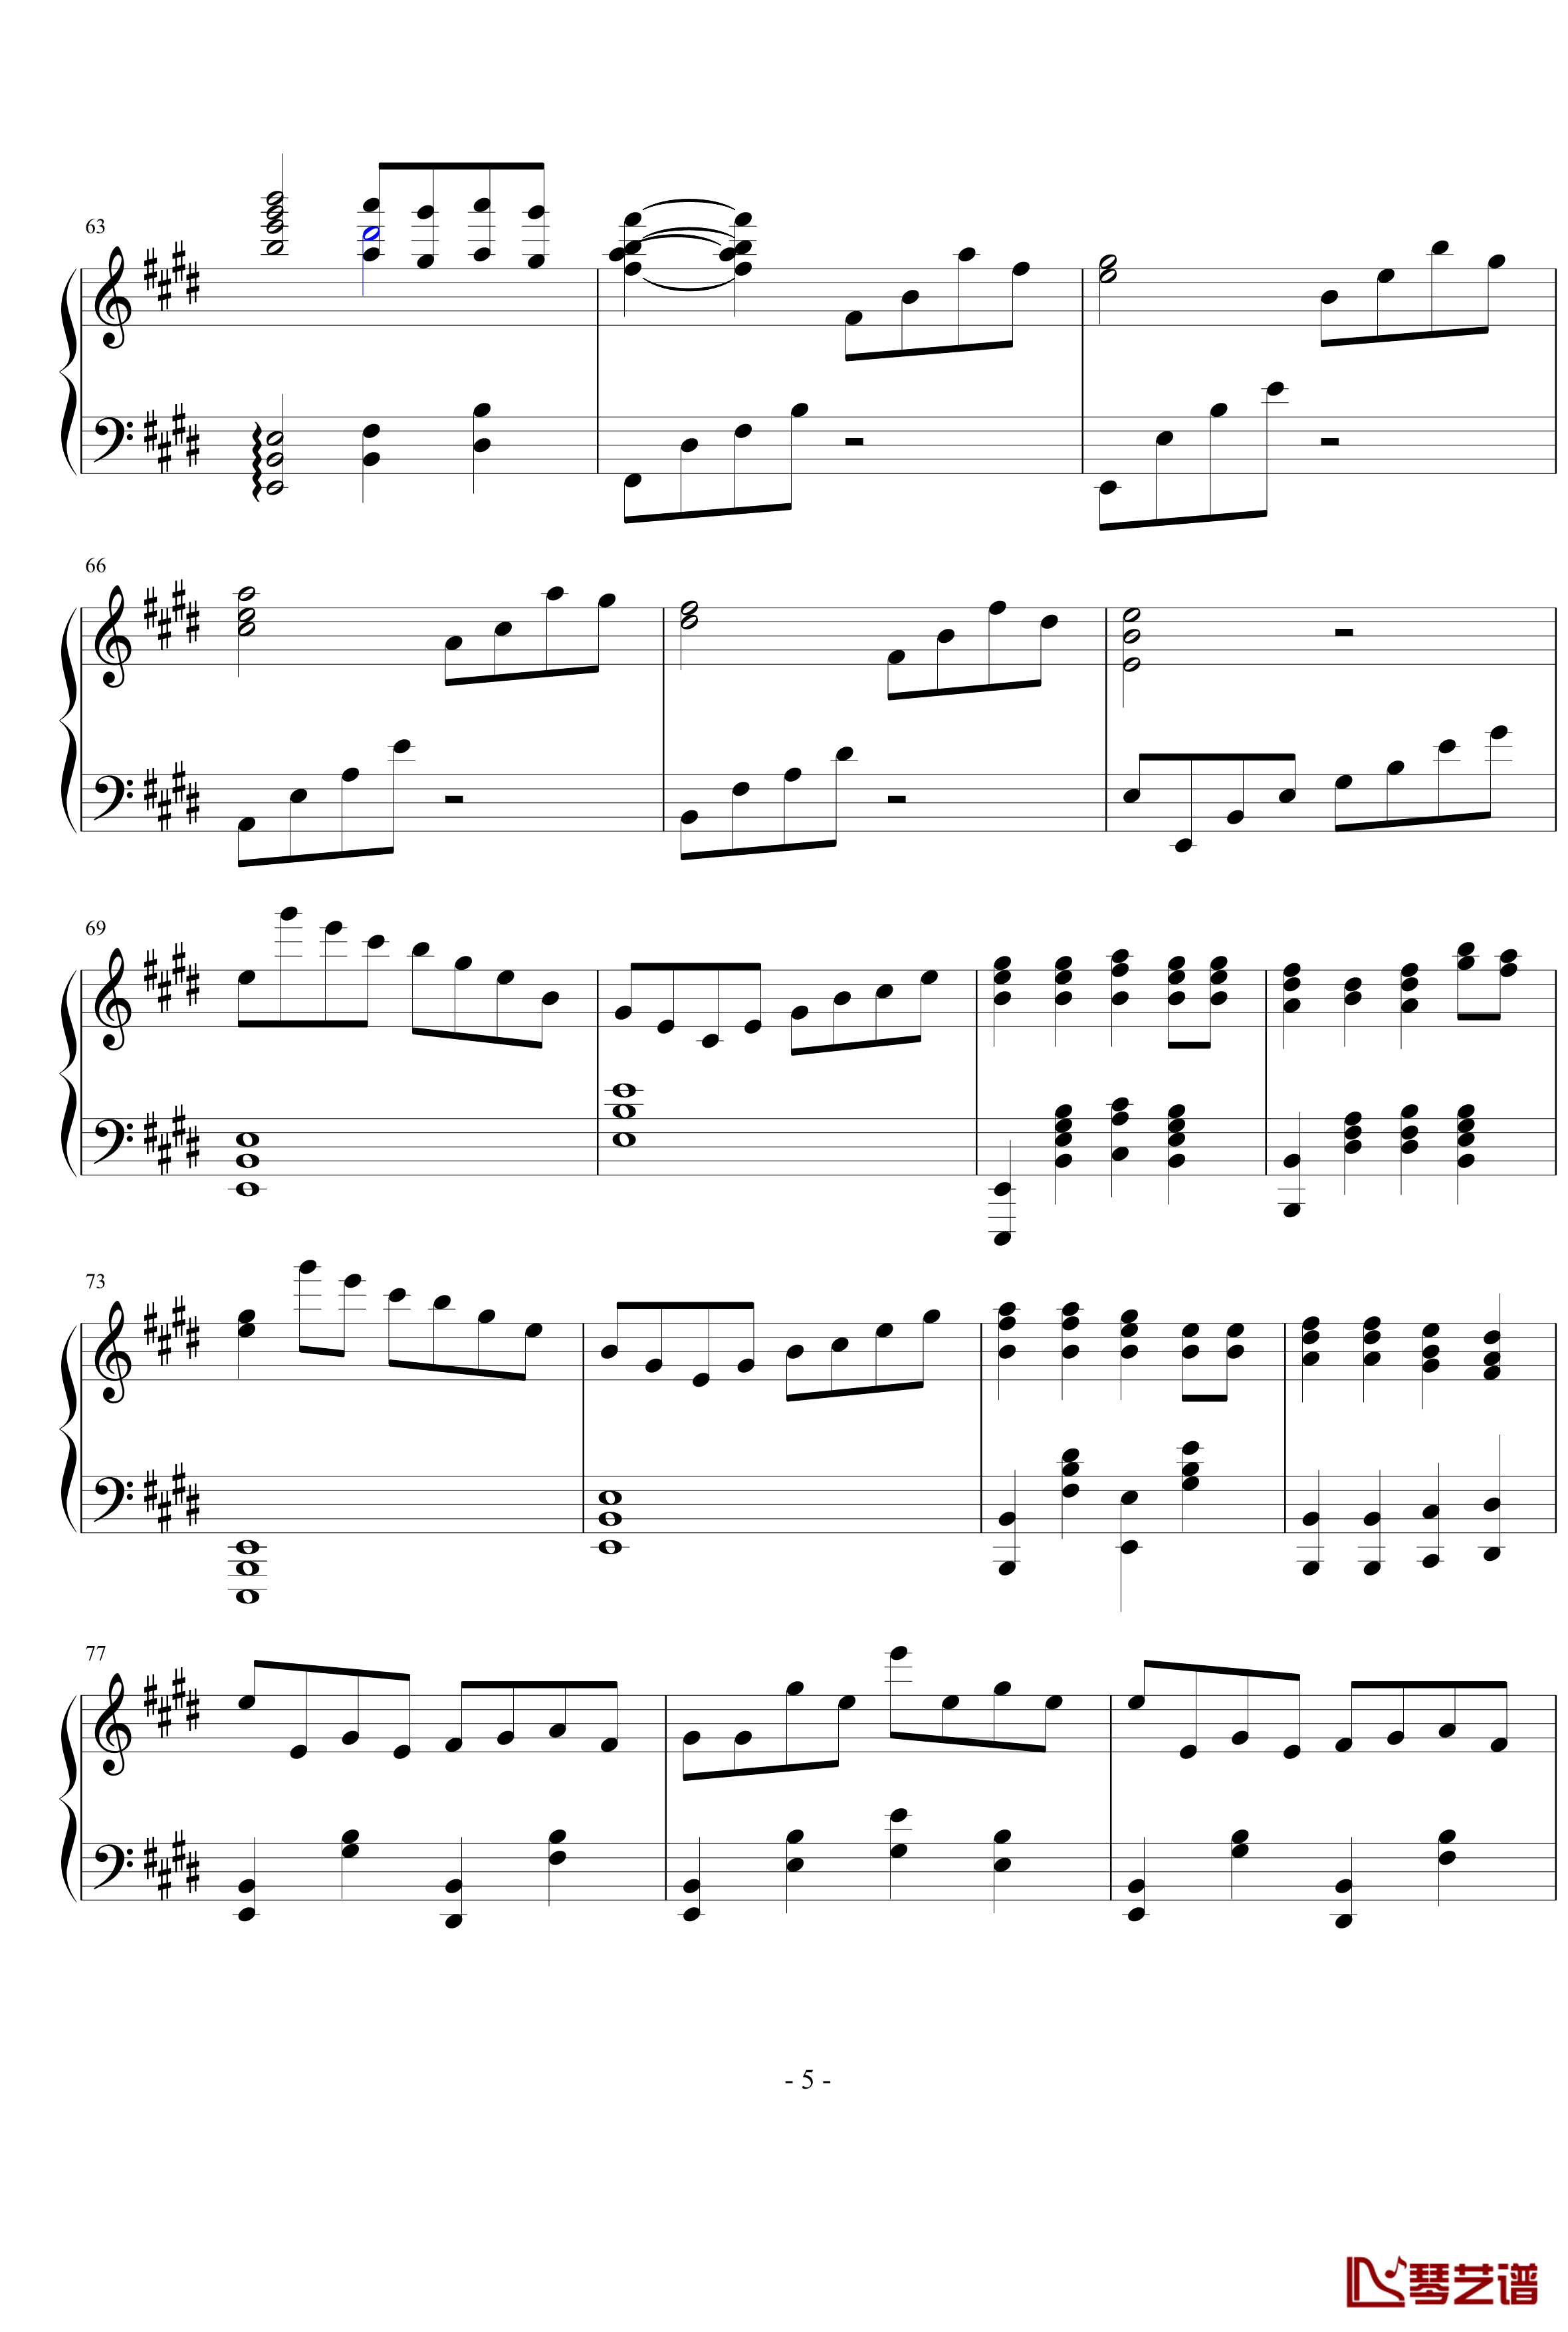 E大调第八练习曲钢琴谱-PARROT1865